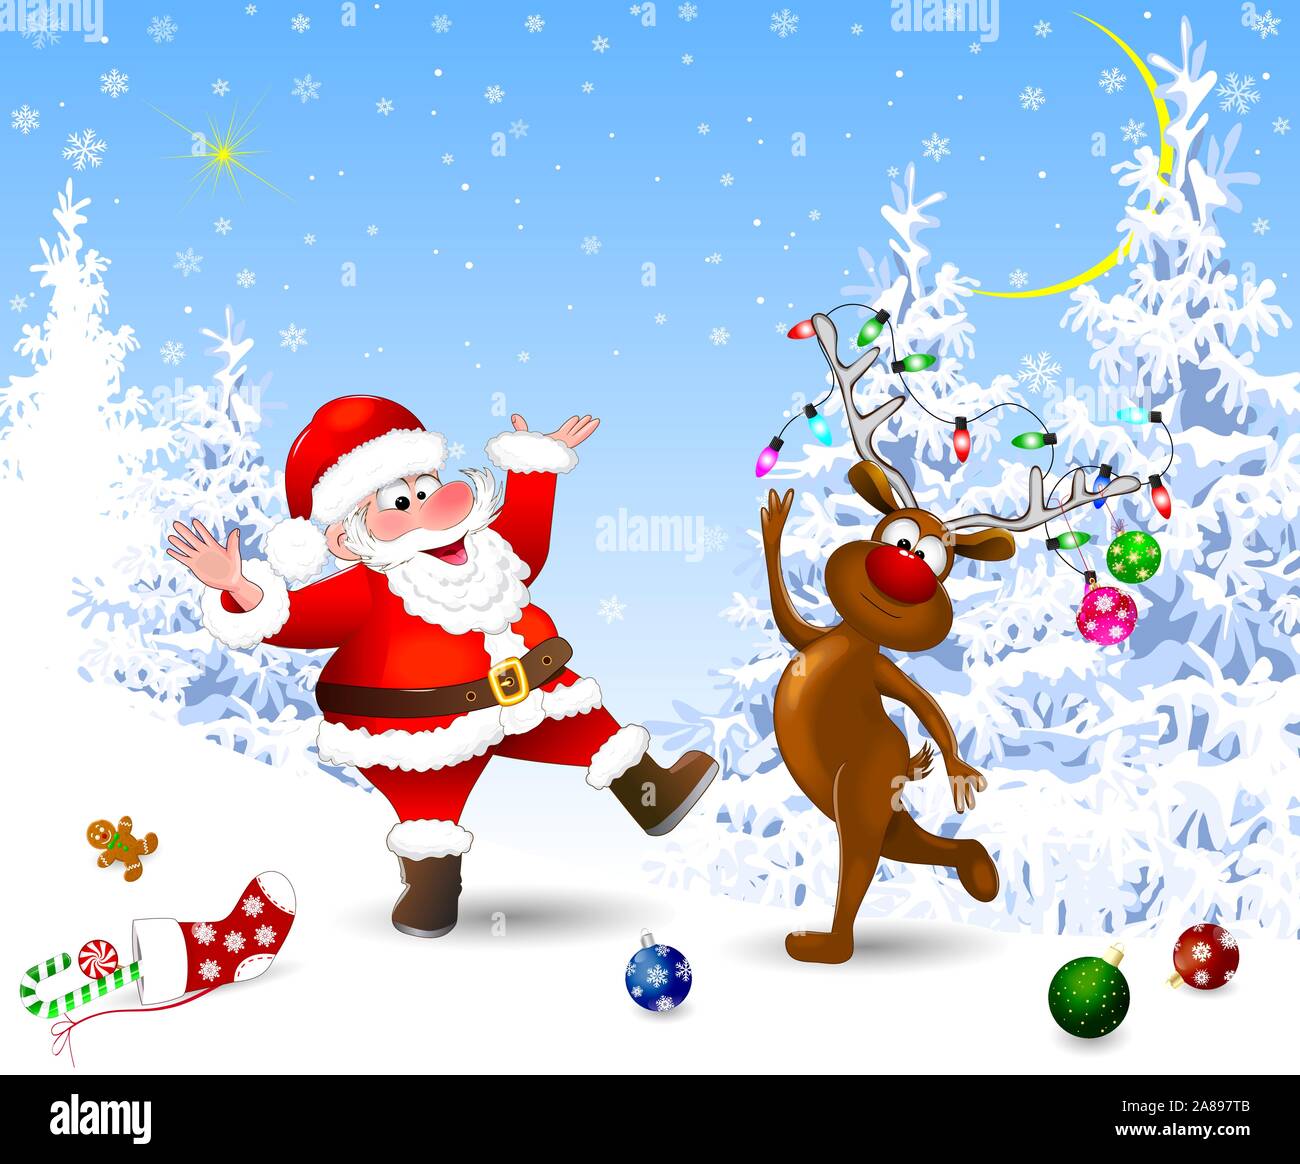 Santa et le cerf dans la forêt d'hiver. Santa et deer célébrer Noël. La veille de Noël. Décorations de Noël dans la neige. La nuit de Noël. Lan d'hiver Illustration de Vecteur